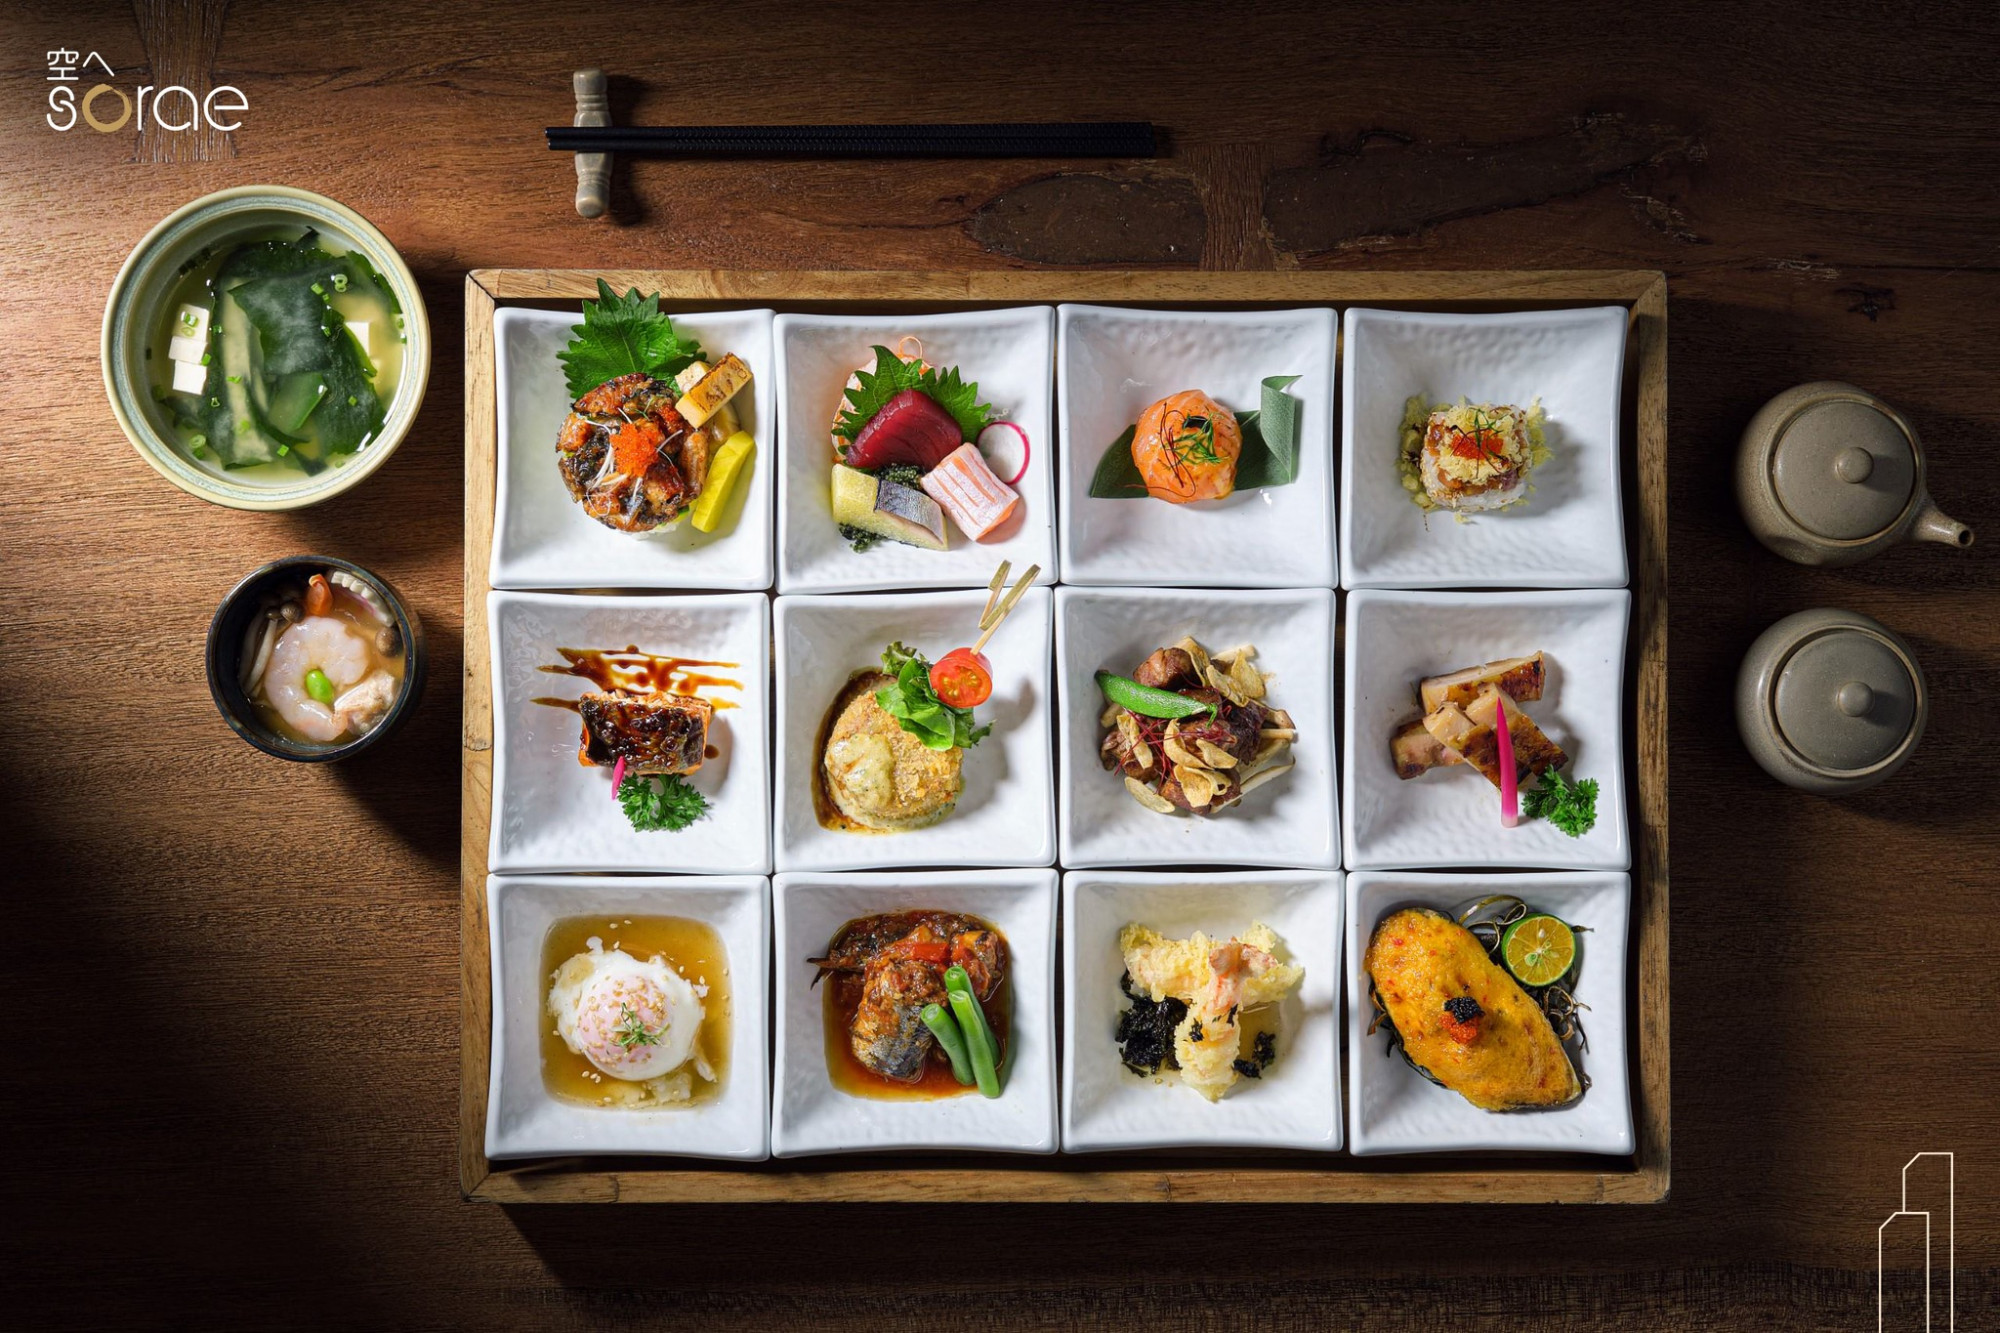 Ăn trưa tại Sorae Restaurant – Lounge (tầng 24 và 25 của tòa nhà văn phòng AB, số 76 đường Lê Lai, Quận 1). Giờ mở cửa từ 11-14g. Sorae là nhà hàng “trên đỉnh tầng mây” mang đậm dấu ấn của đất nước Nhật Bản xinh đẹp. Đến đây, bạn sẽ được thưởng thức sashimi tươi ngon, xem chế biến món nướng trên bếp yakitori... Giá một bữa ăn tại đây dao động từ 600.000 đồng/ người. 